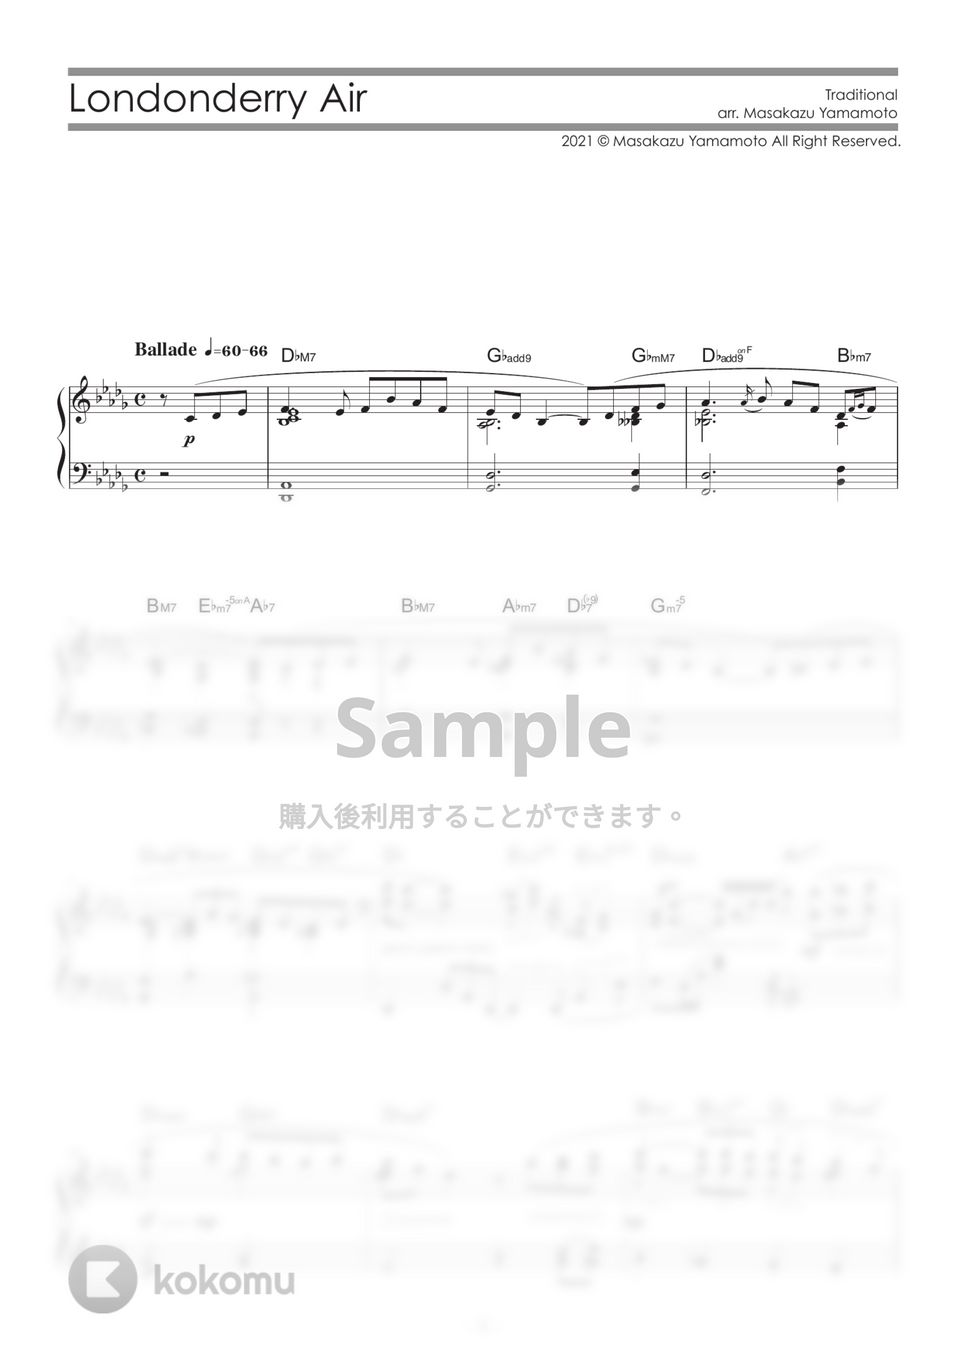 アイルランド民謡 - ロンドンデリーの歌（ダニー・ボーイ） (ピアノ上級) by 山本雅一